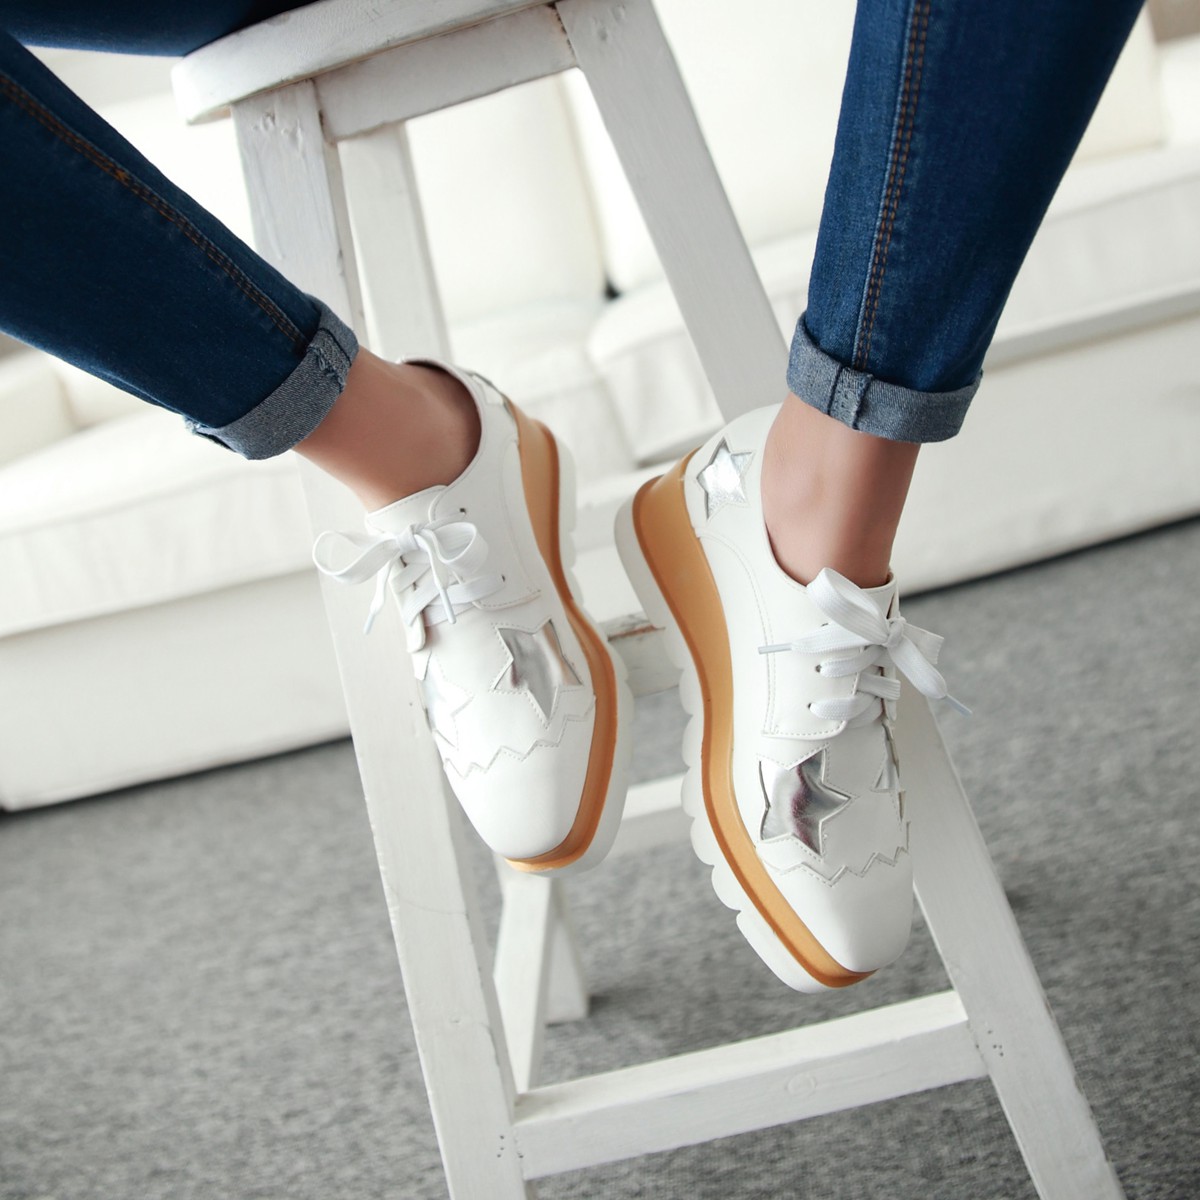 women's platform oxford lace up shoes